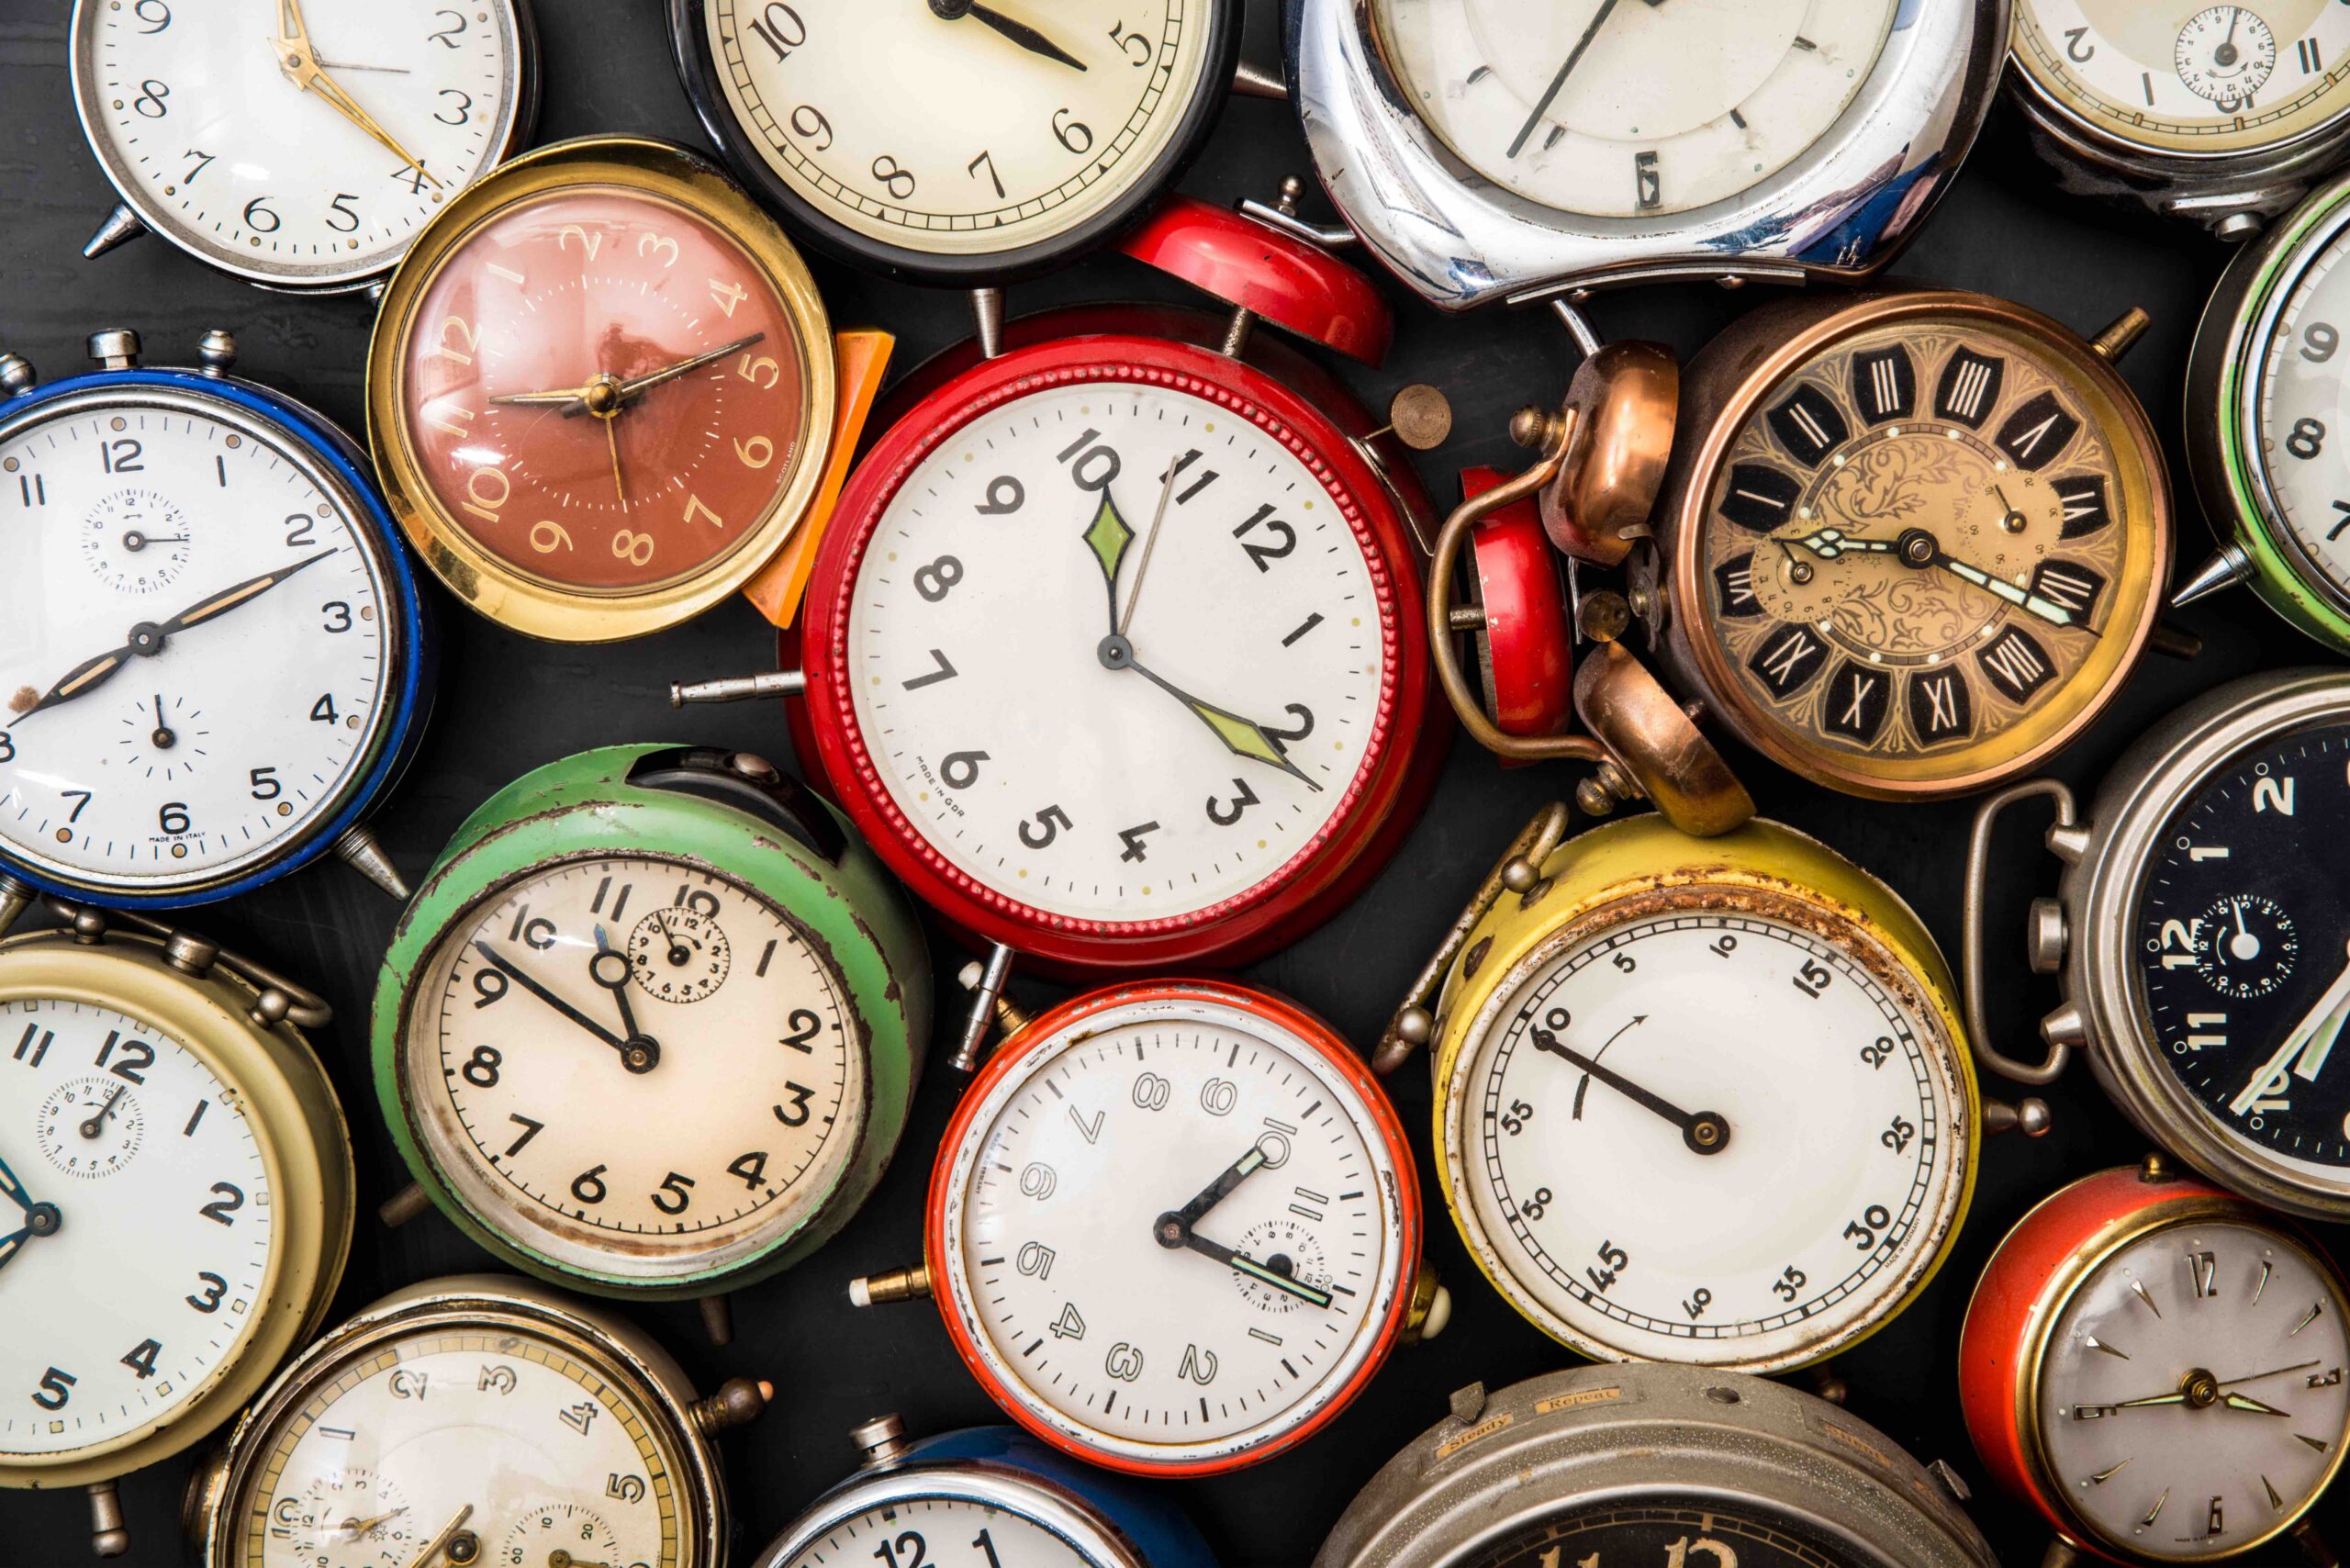 a vintage alarm clock collection